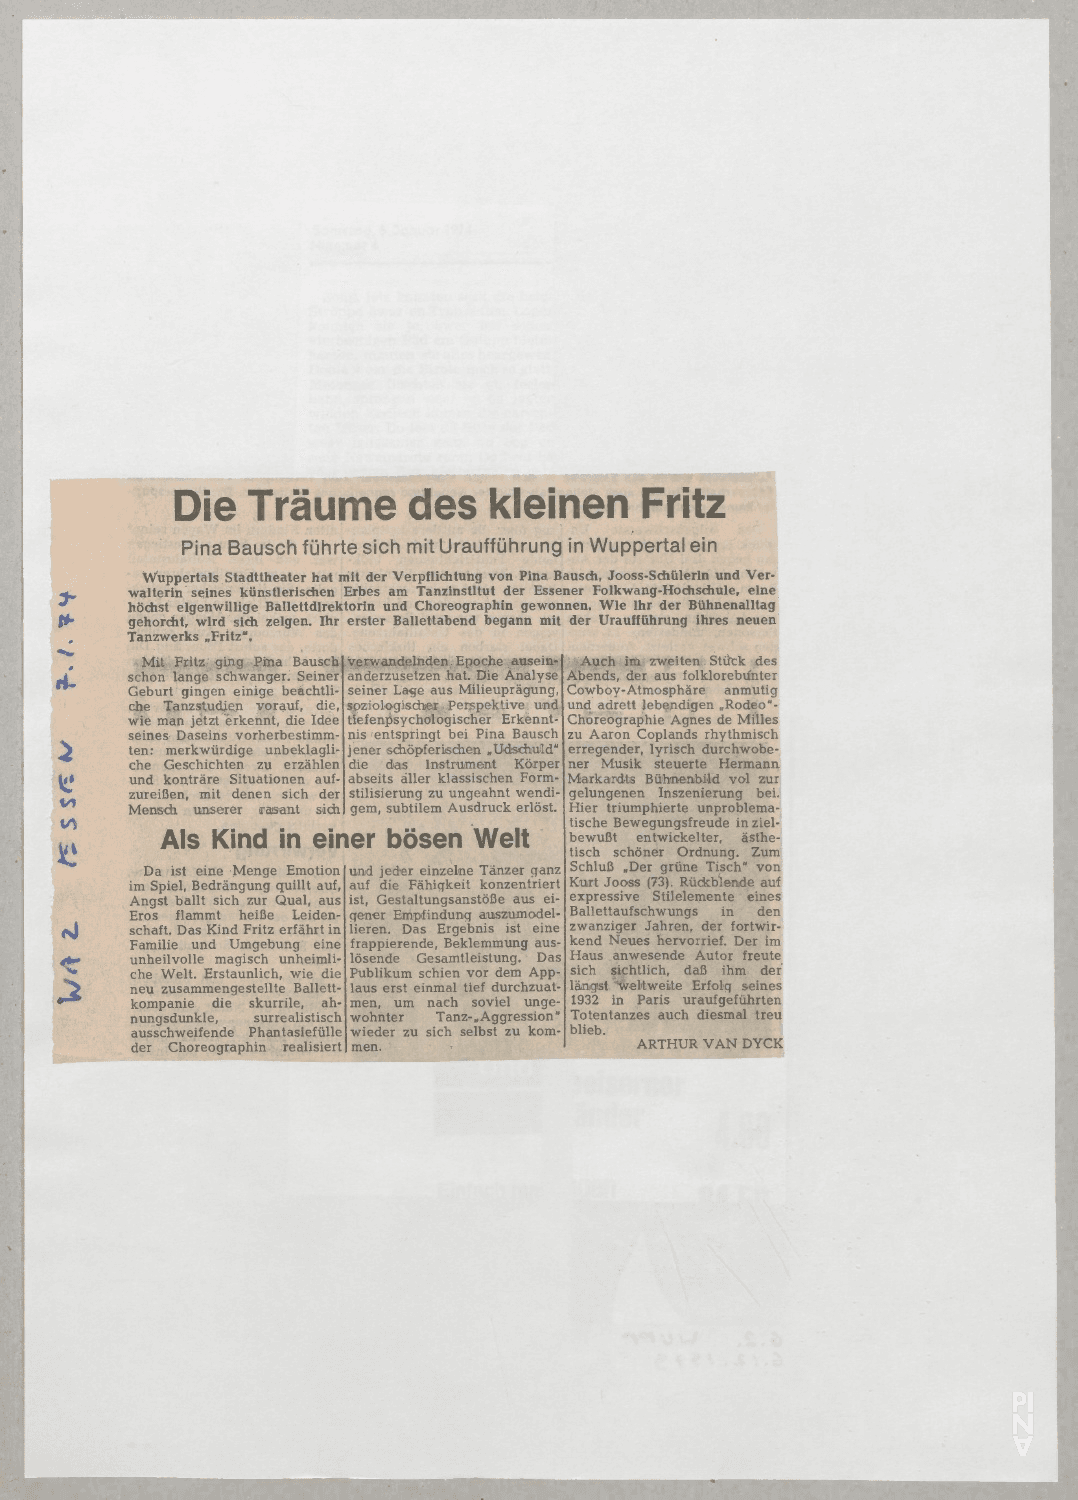 Die Träume des kleinen Fritz – Arthur van Dyck, Westdeutsche Allgemeine Zeitung